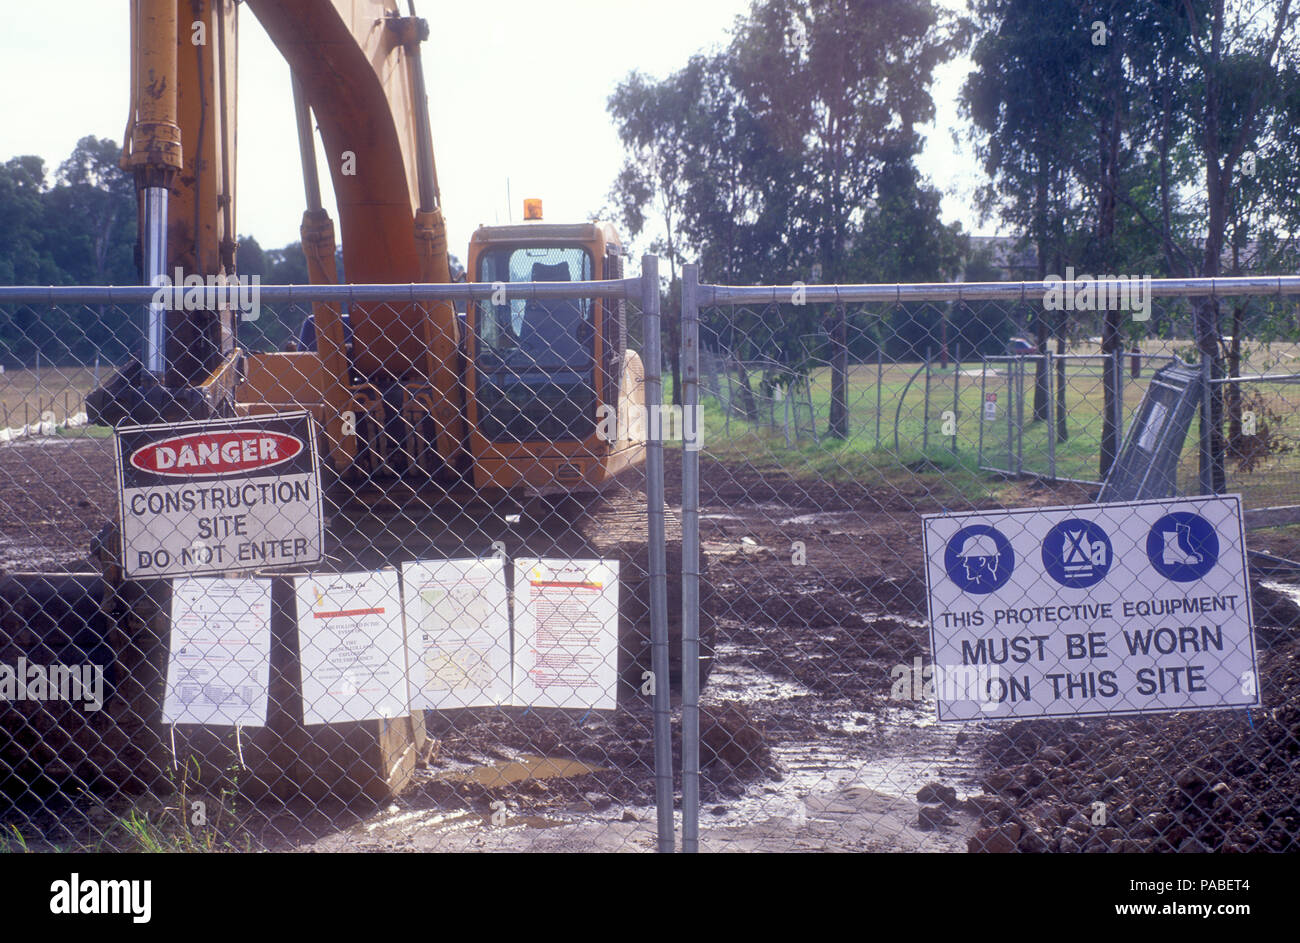 Construction site clôturé avec modèle de machinerie lourde et de panneaux d'avertissement, réseau express régional Sydney, New South Wales, Australia Banque D'Images